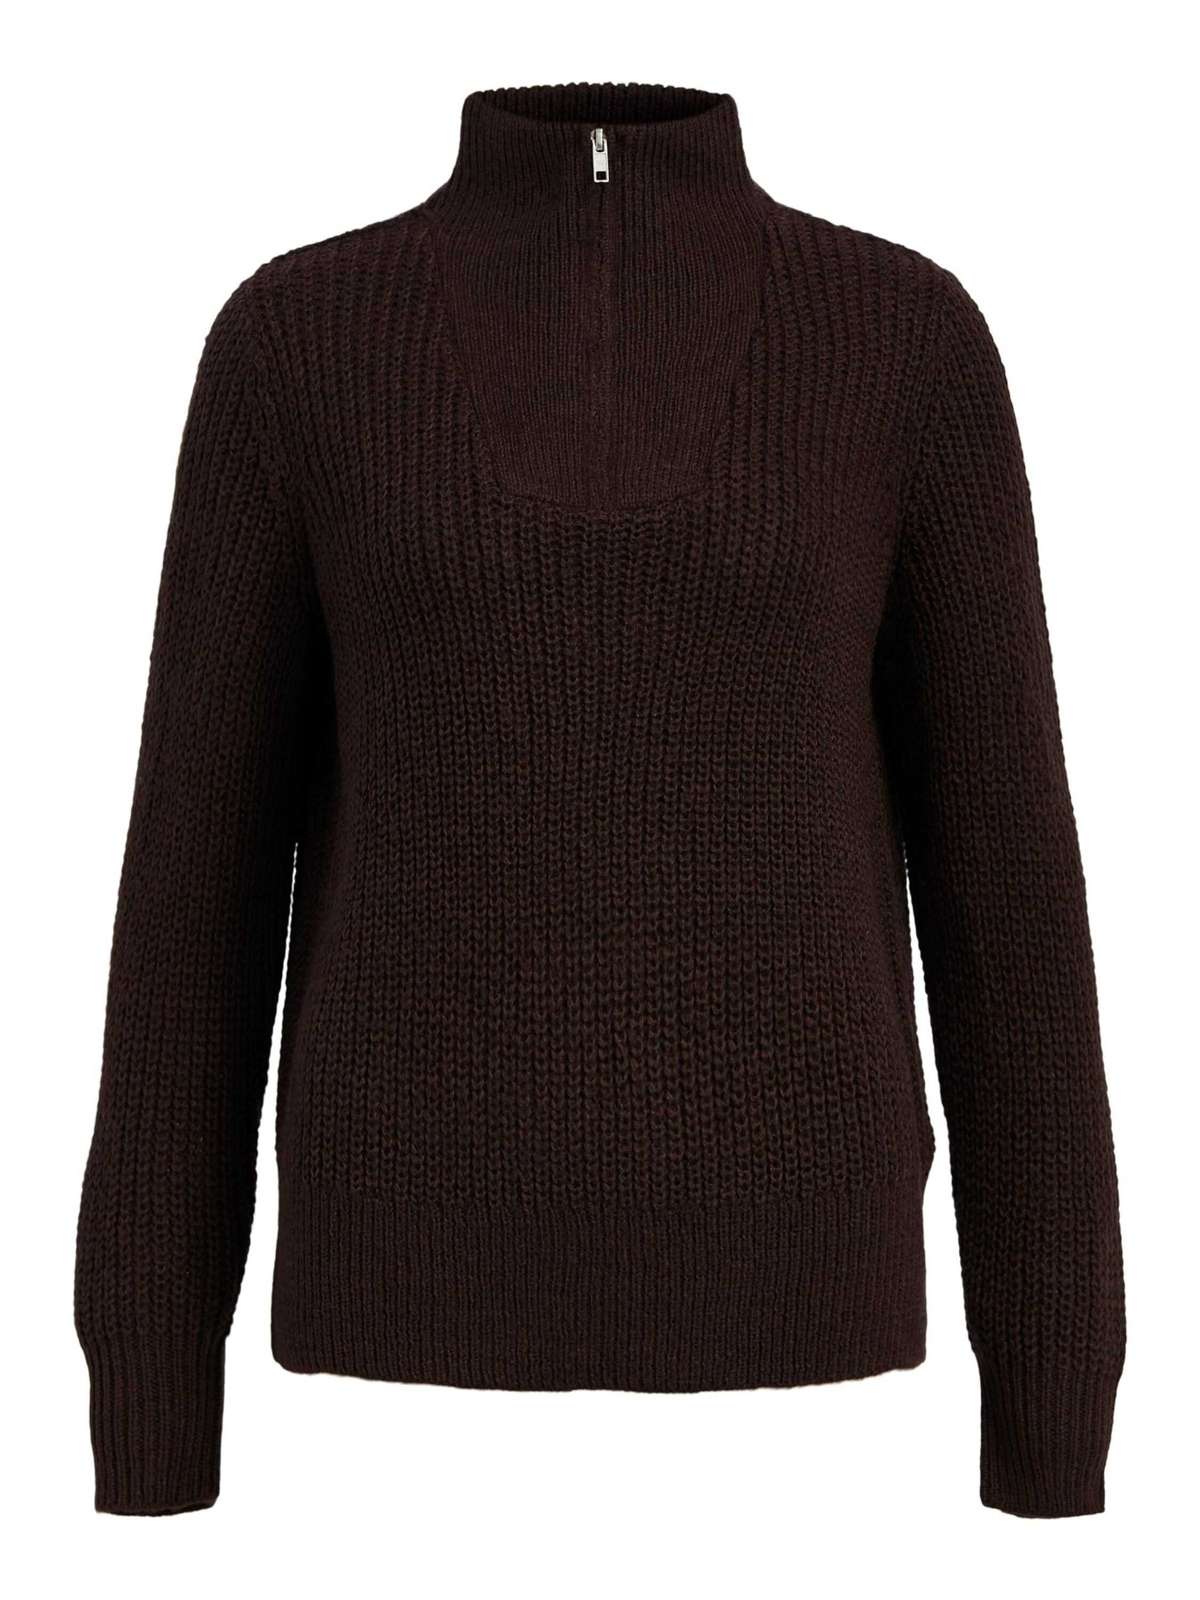 Вязаный свитер Стелла (1 шт.) Подробнее